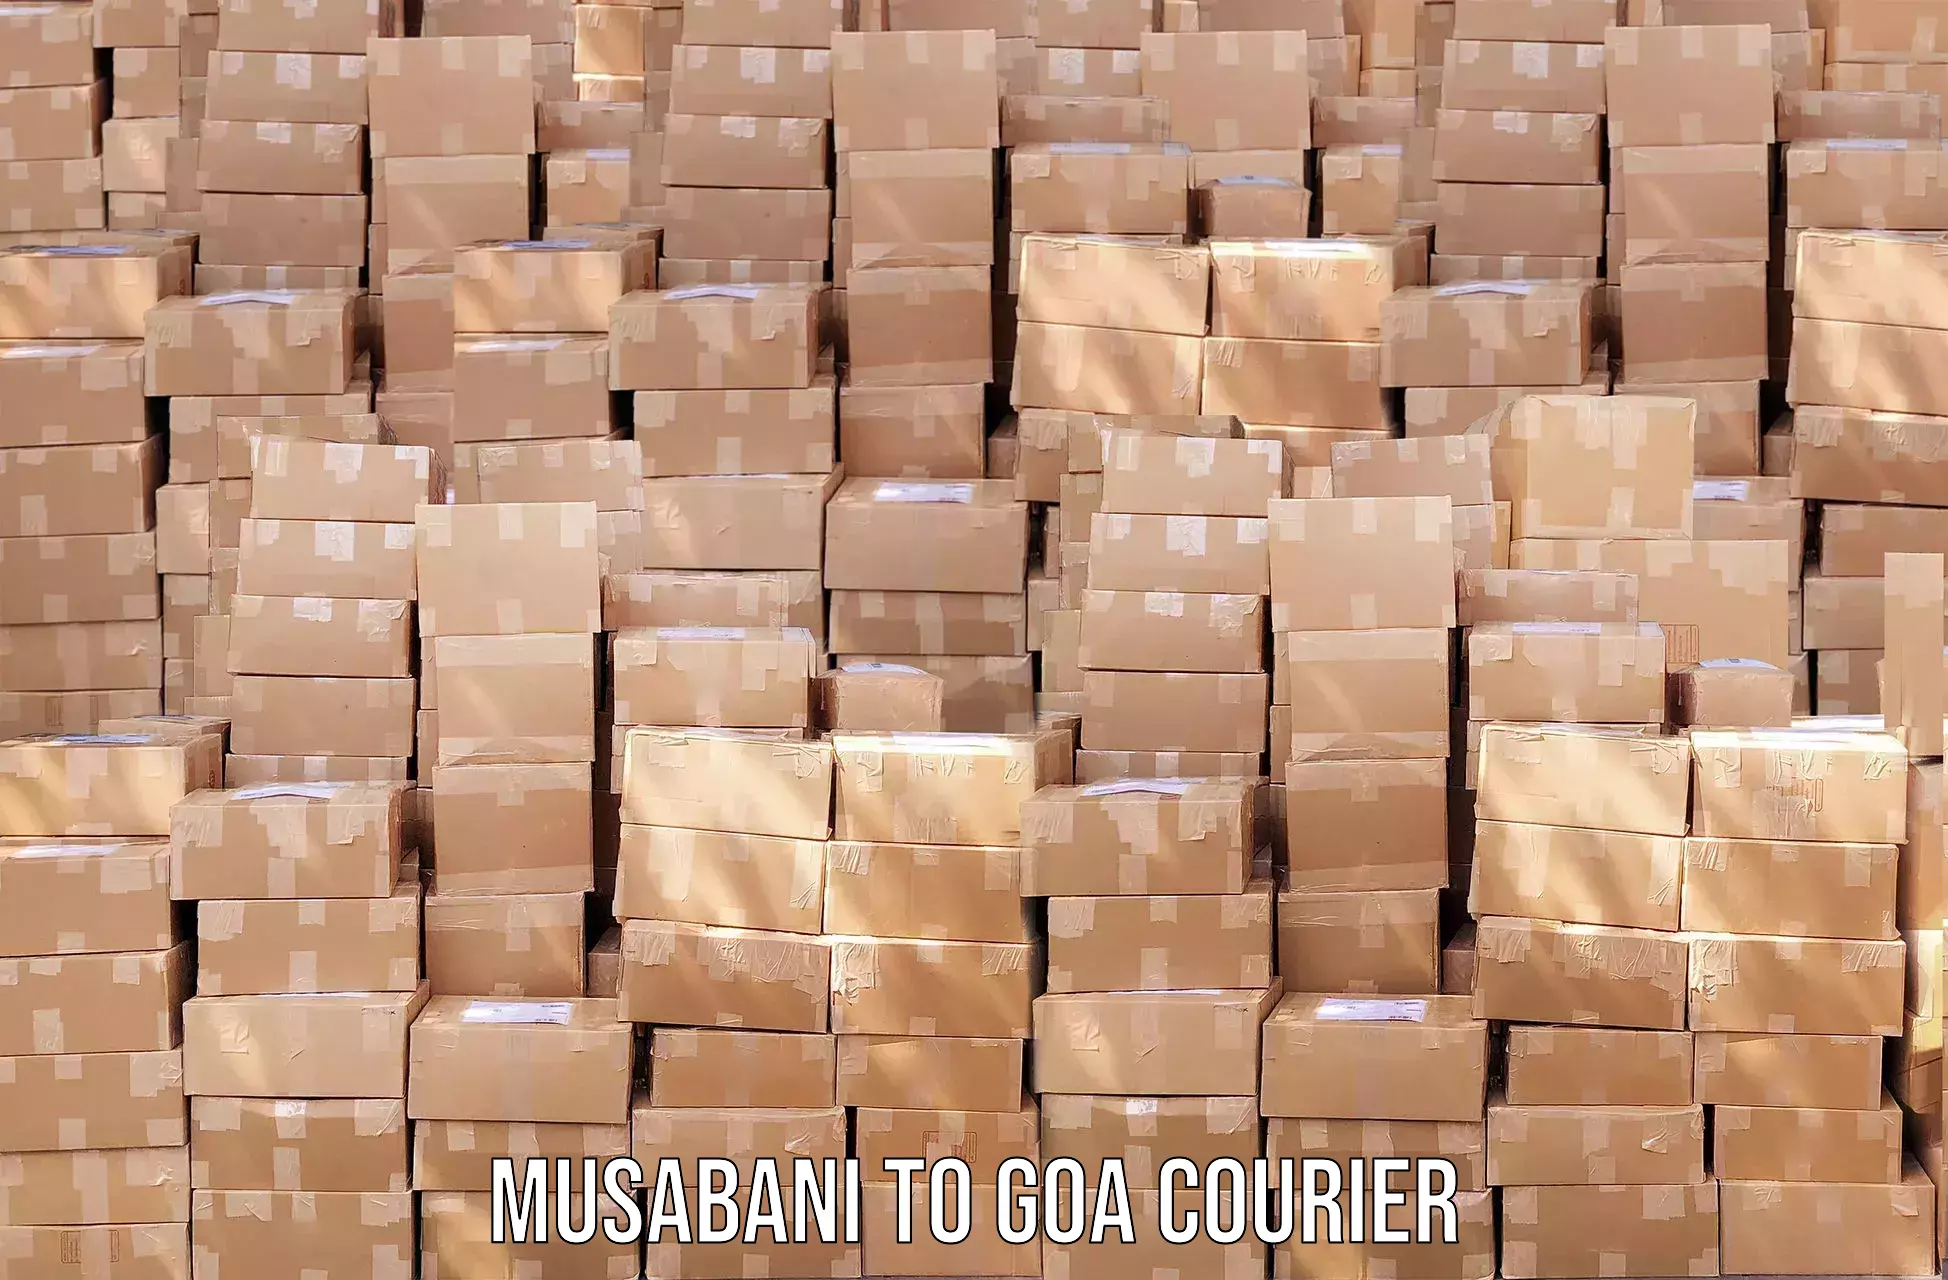 Expedited shipping methods Musabani to IIT Goa